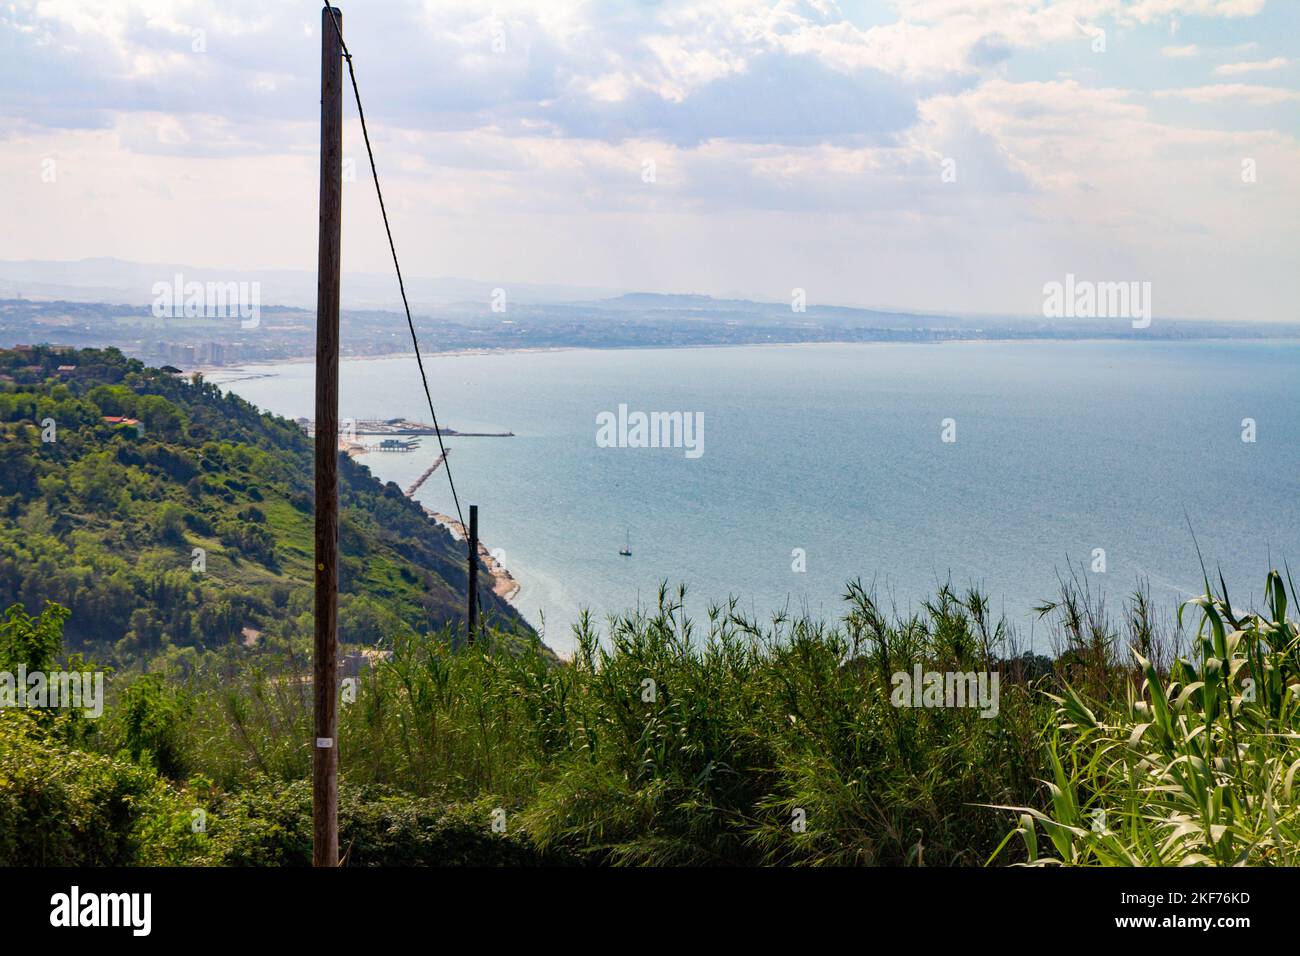 La côte de Riccione loin montagnes vue, Italie. Photo de haute qualité Banque D'Images